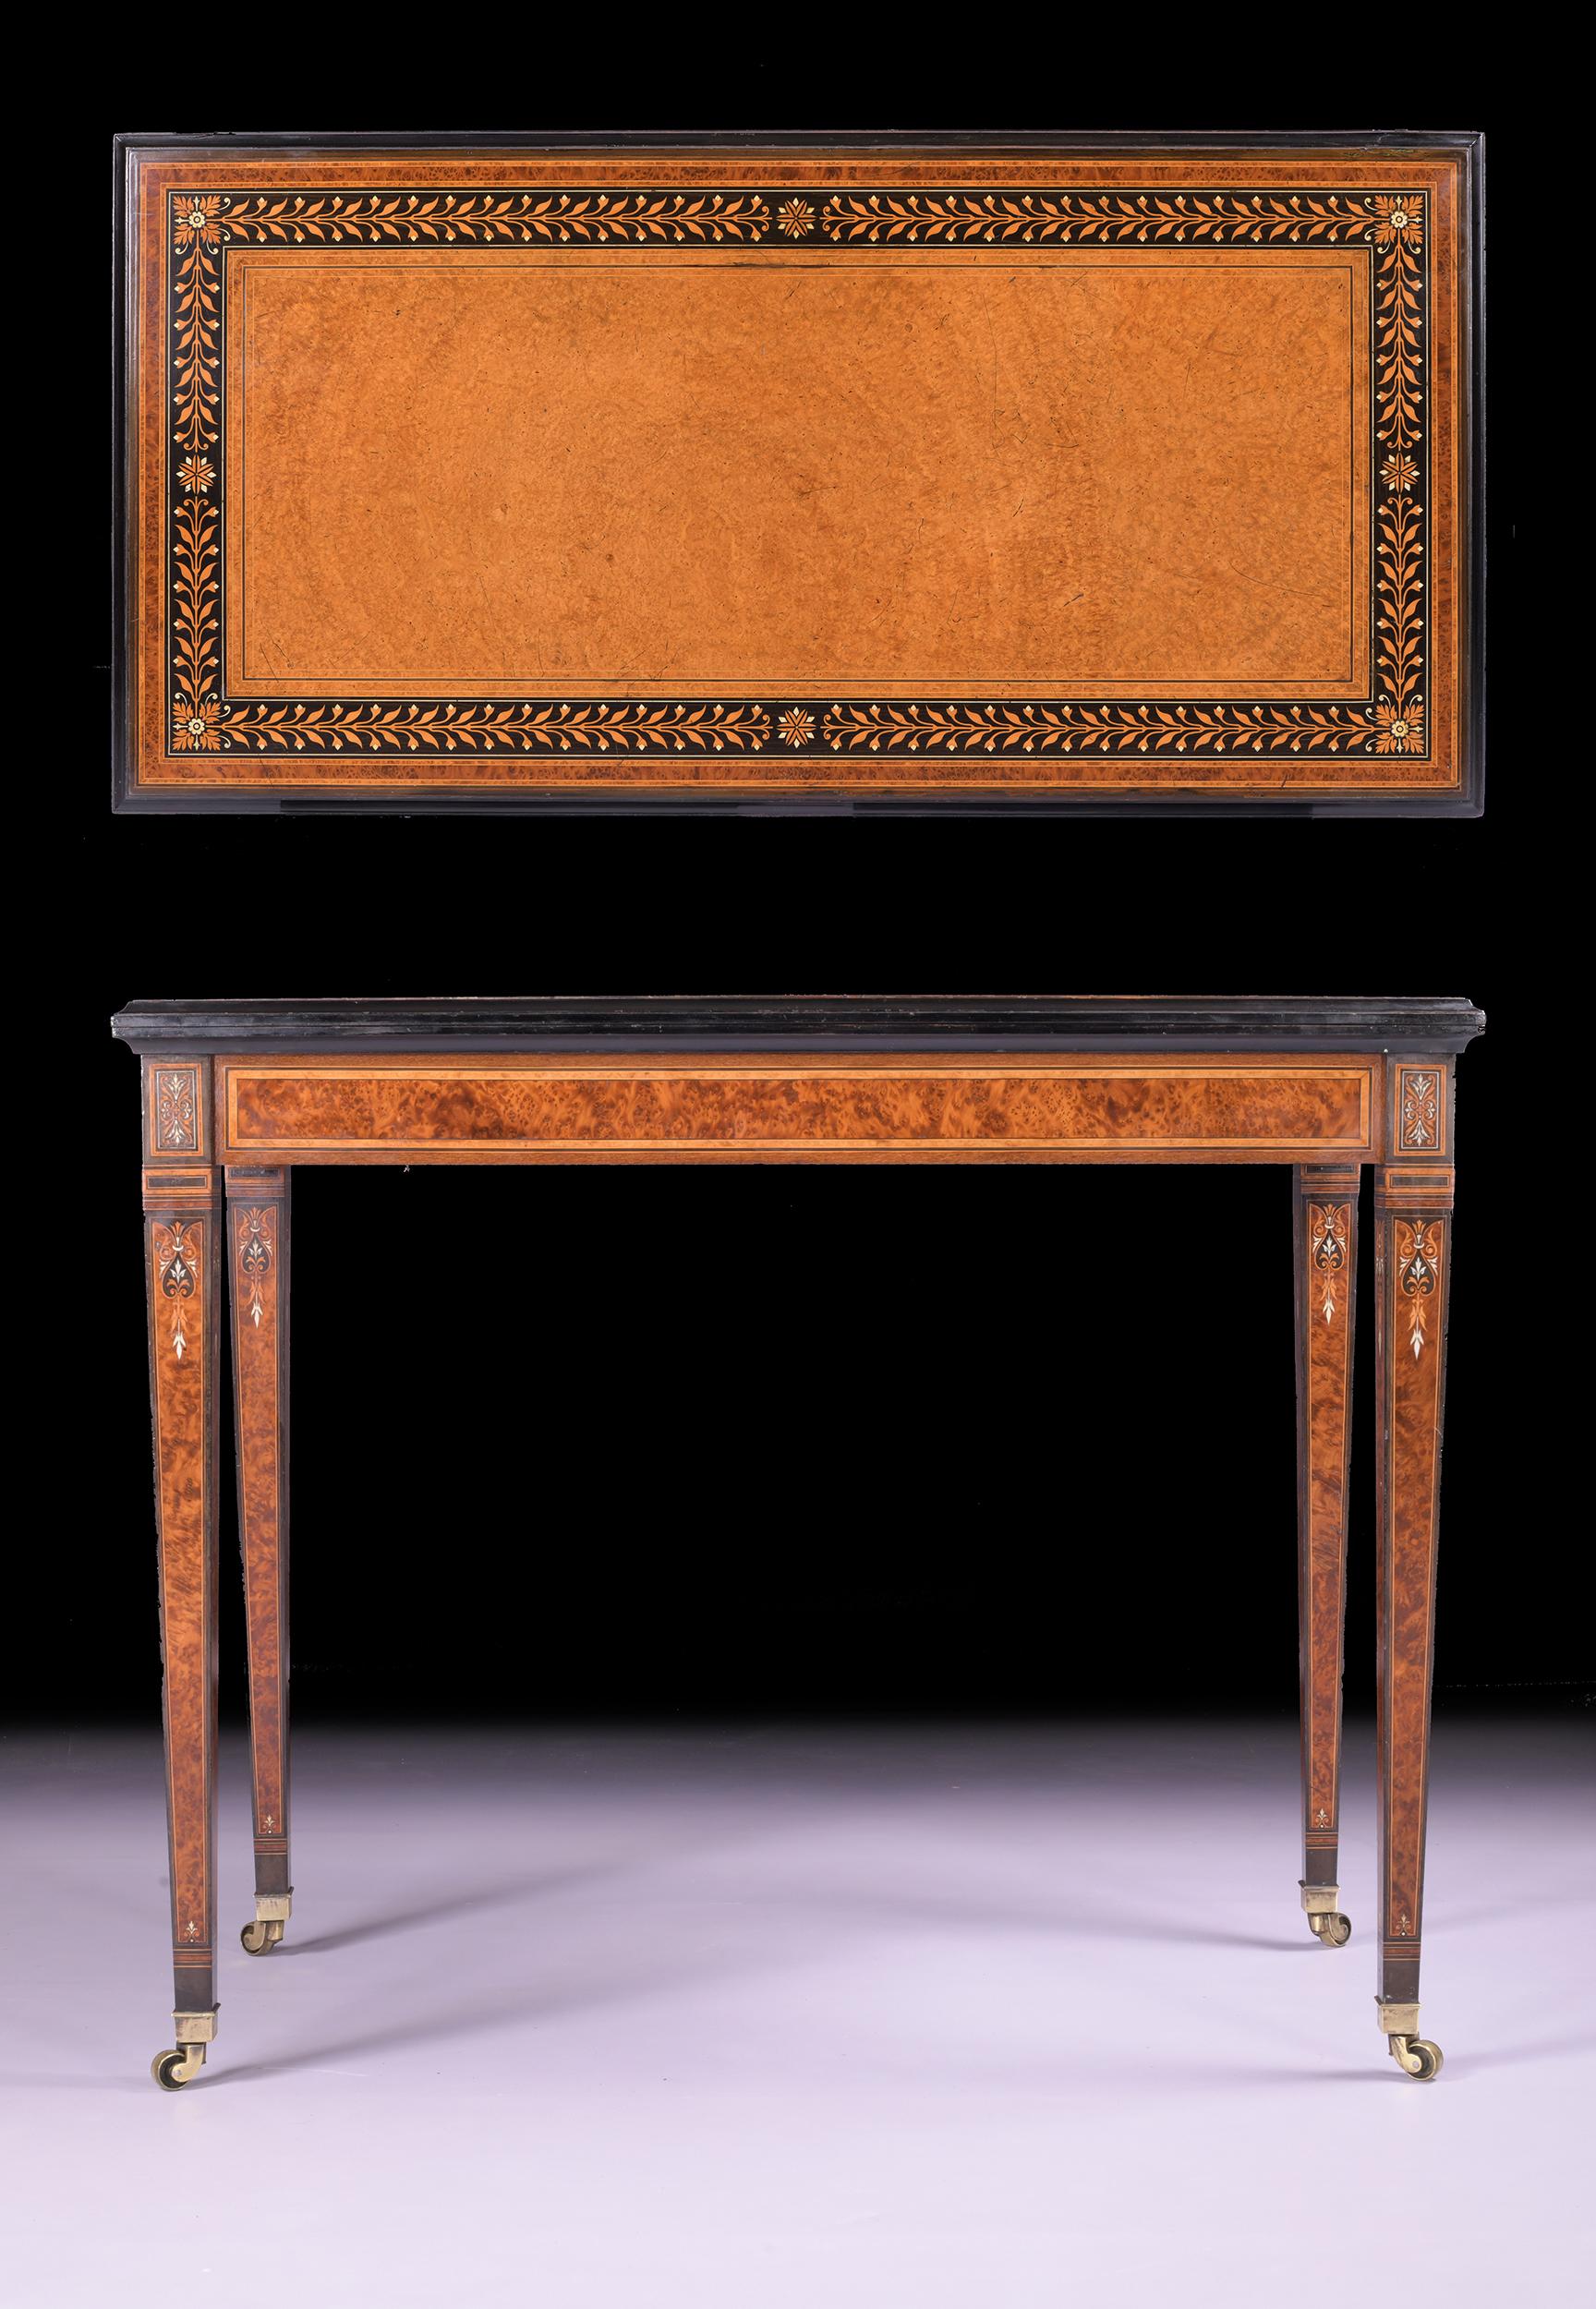 Ein außergewöhnlicher Spieltisch aus Amboina und Ebenholz aus dem 19. Jahrhundert, der Holland & Sons zugeschrieben wird. Die rechteckige, aufklappbare Platte ist mit Blattbändern verziert und öffnet sich mit Hilfe eines Teleskops zu einer